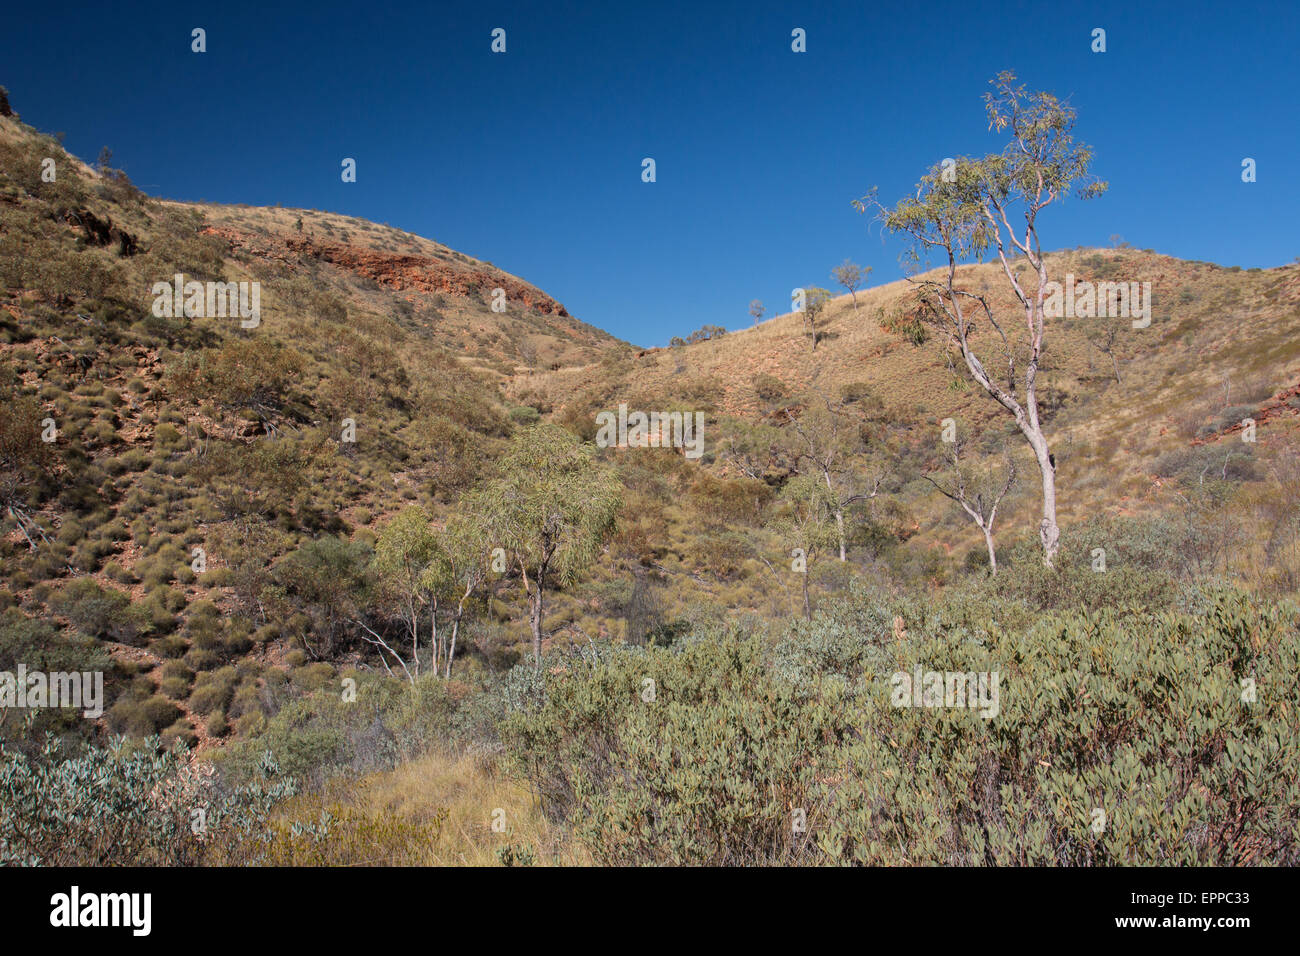 Vegetò vallata a Ormiston Gorge in una regione arida del West MacDonnell Ranges, Territorio del Nord, l'Australia Foto Stock